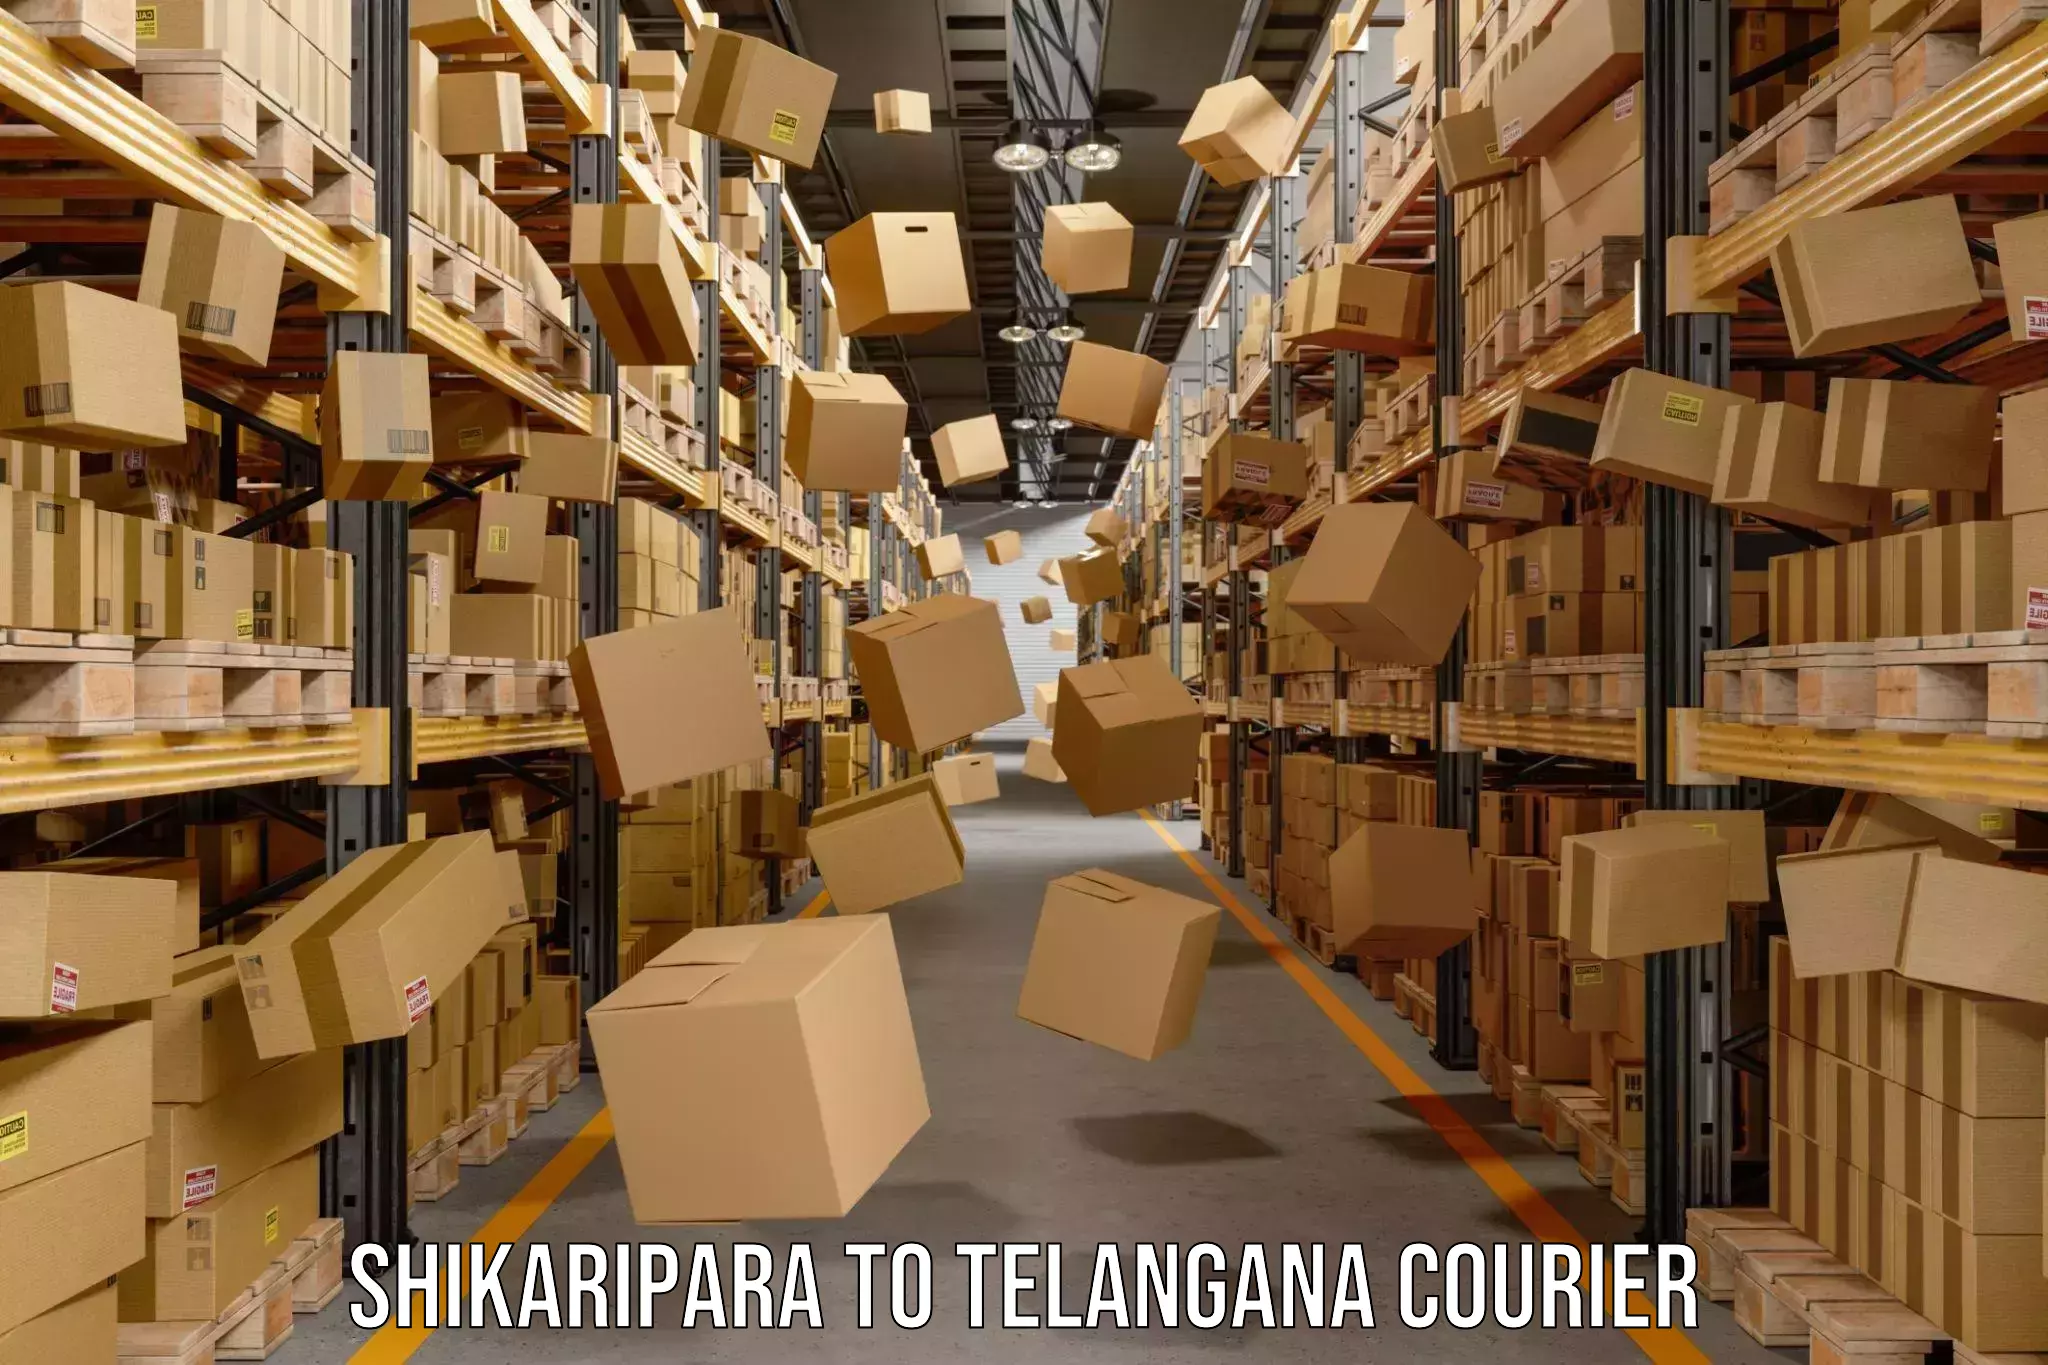 Express logistics providers Shikaripara to Shadnagar